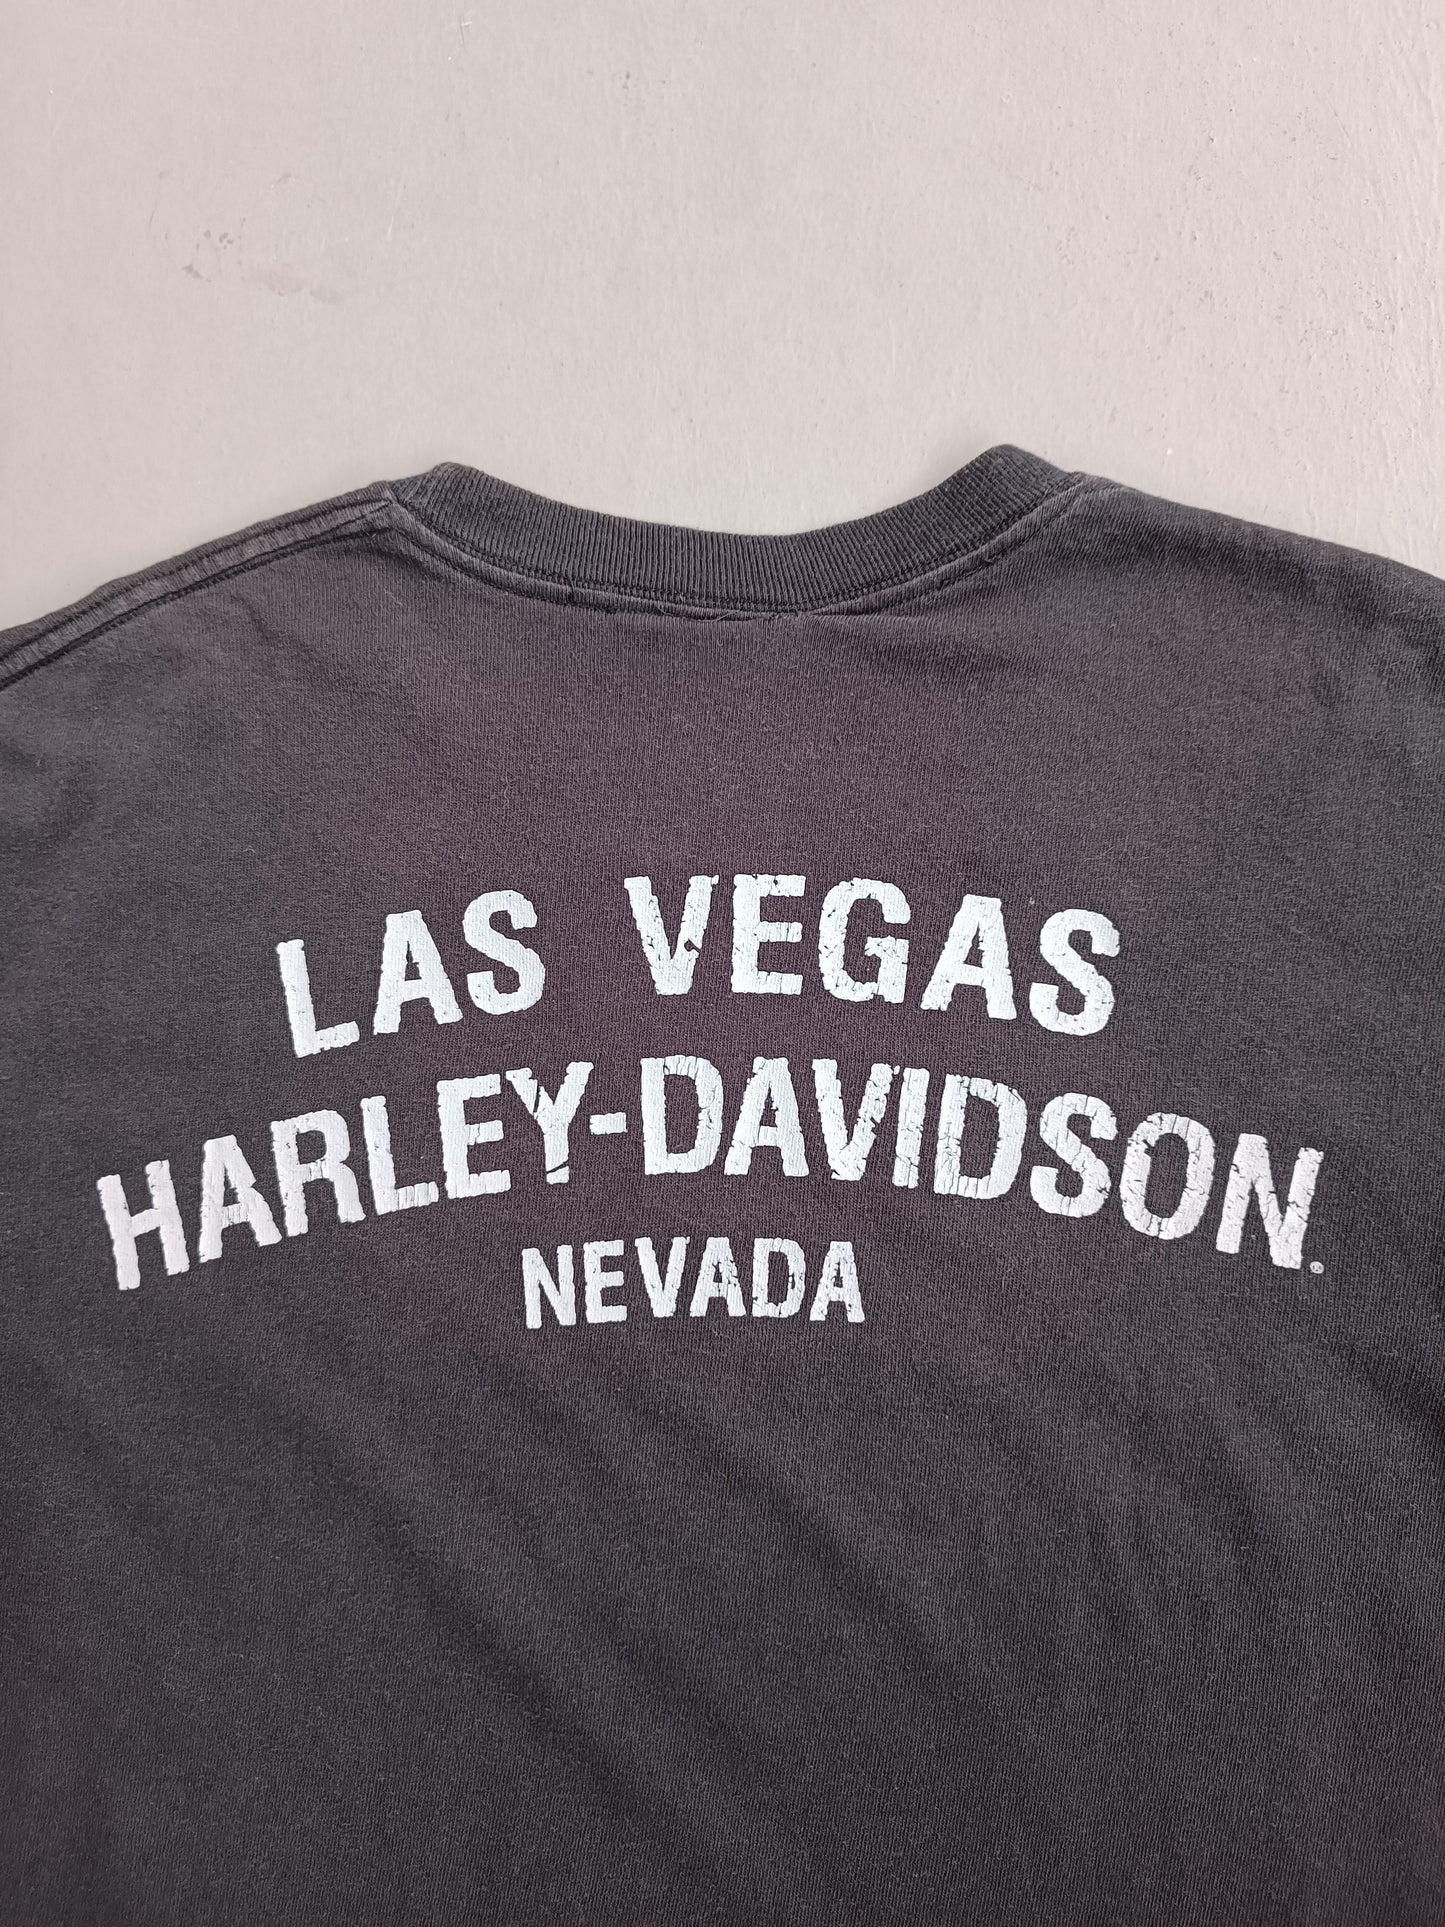 Harley Davidson Las Vegas - M